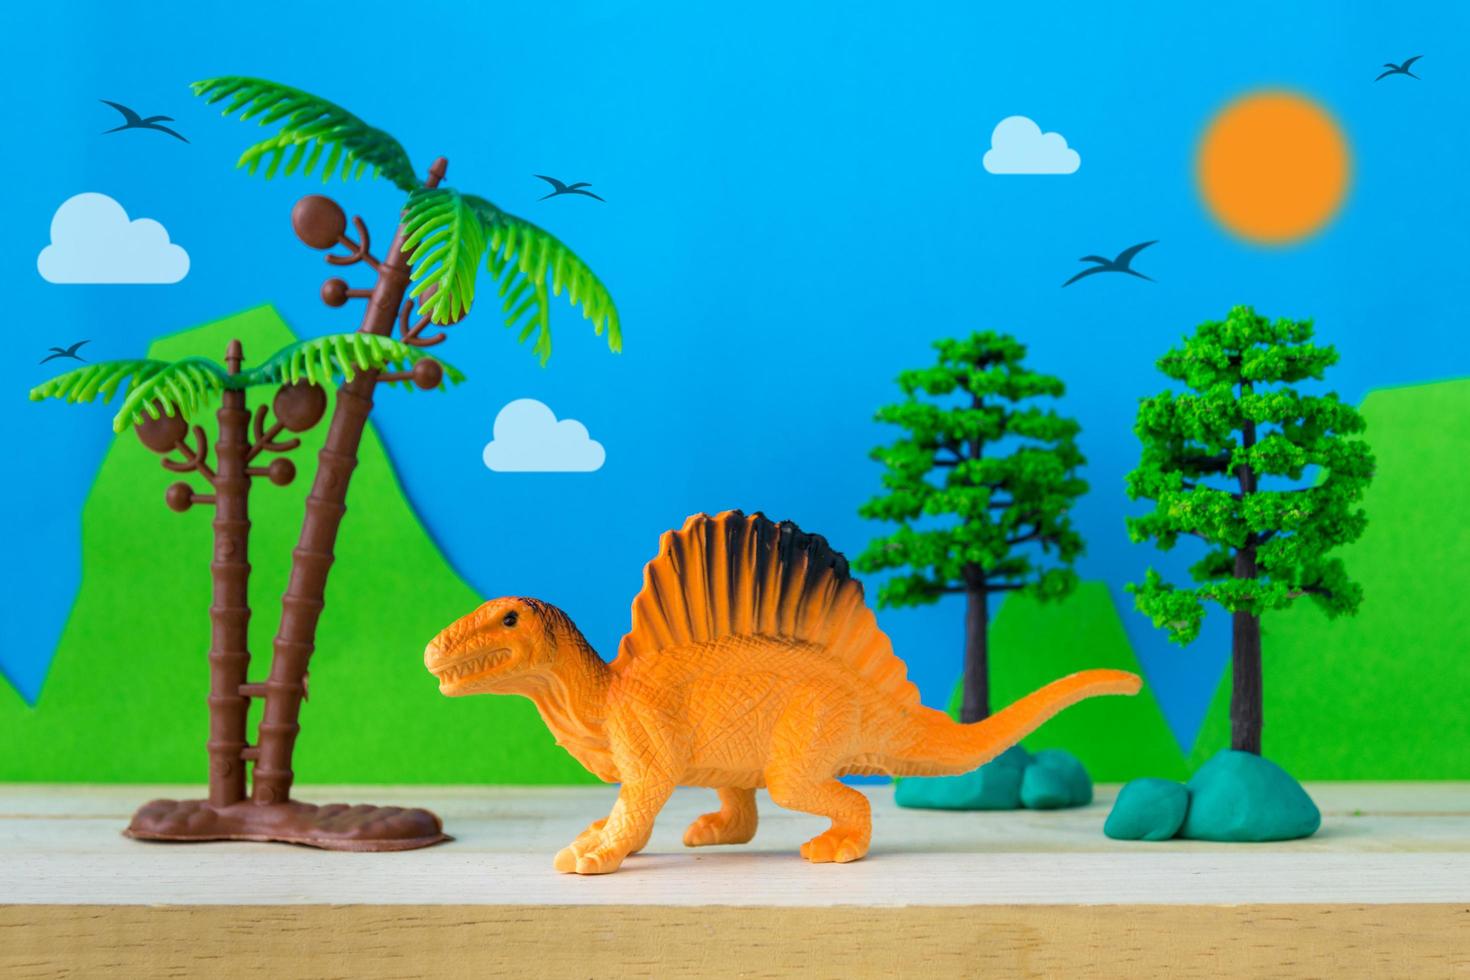 Spinosaurus toy model on wild models background photo